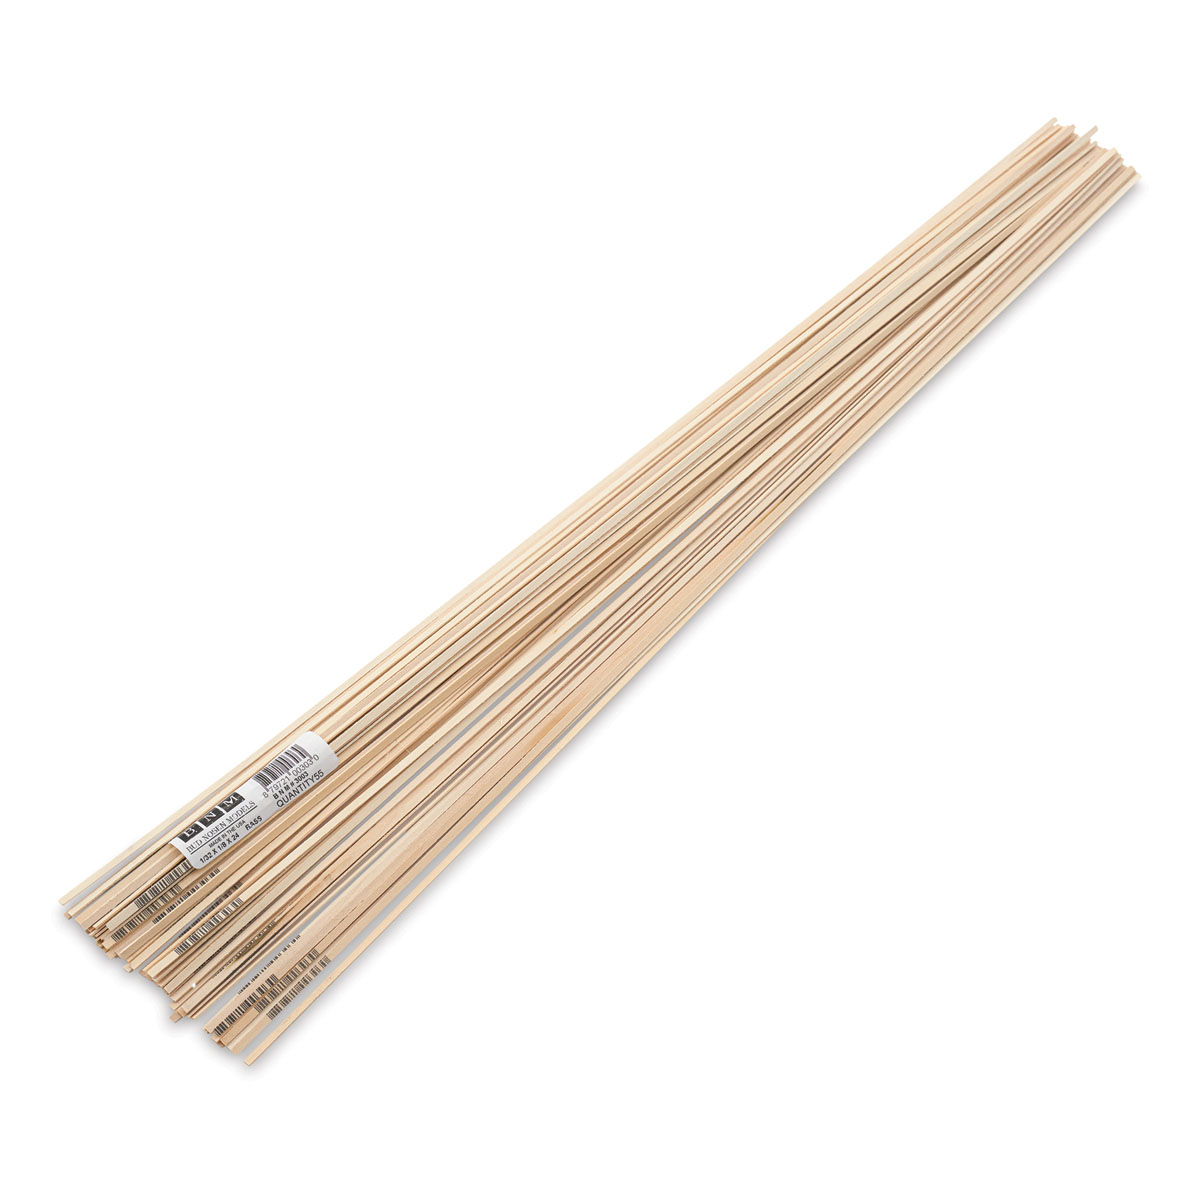 Bud Nosen Balsa Wood Sticks - 1/16 x 1/2 x 36, Pkg of 24